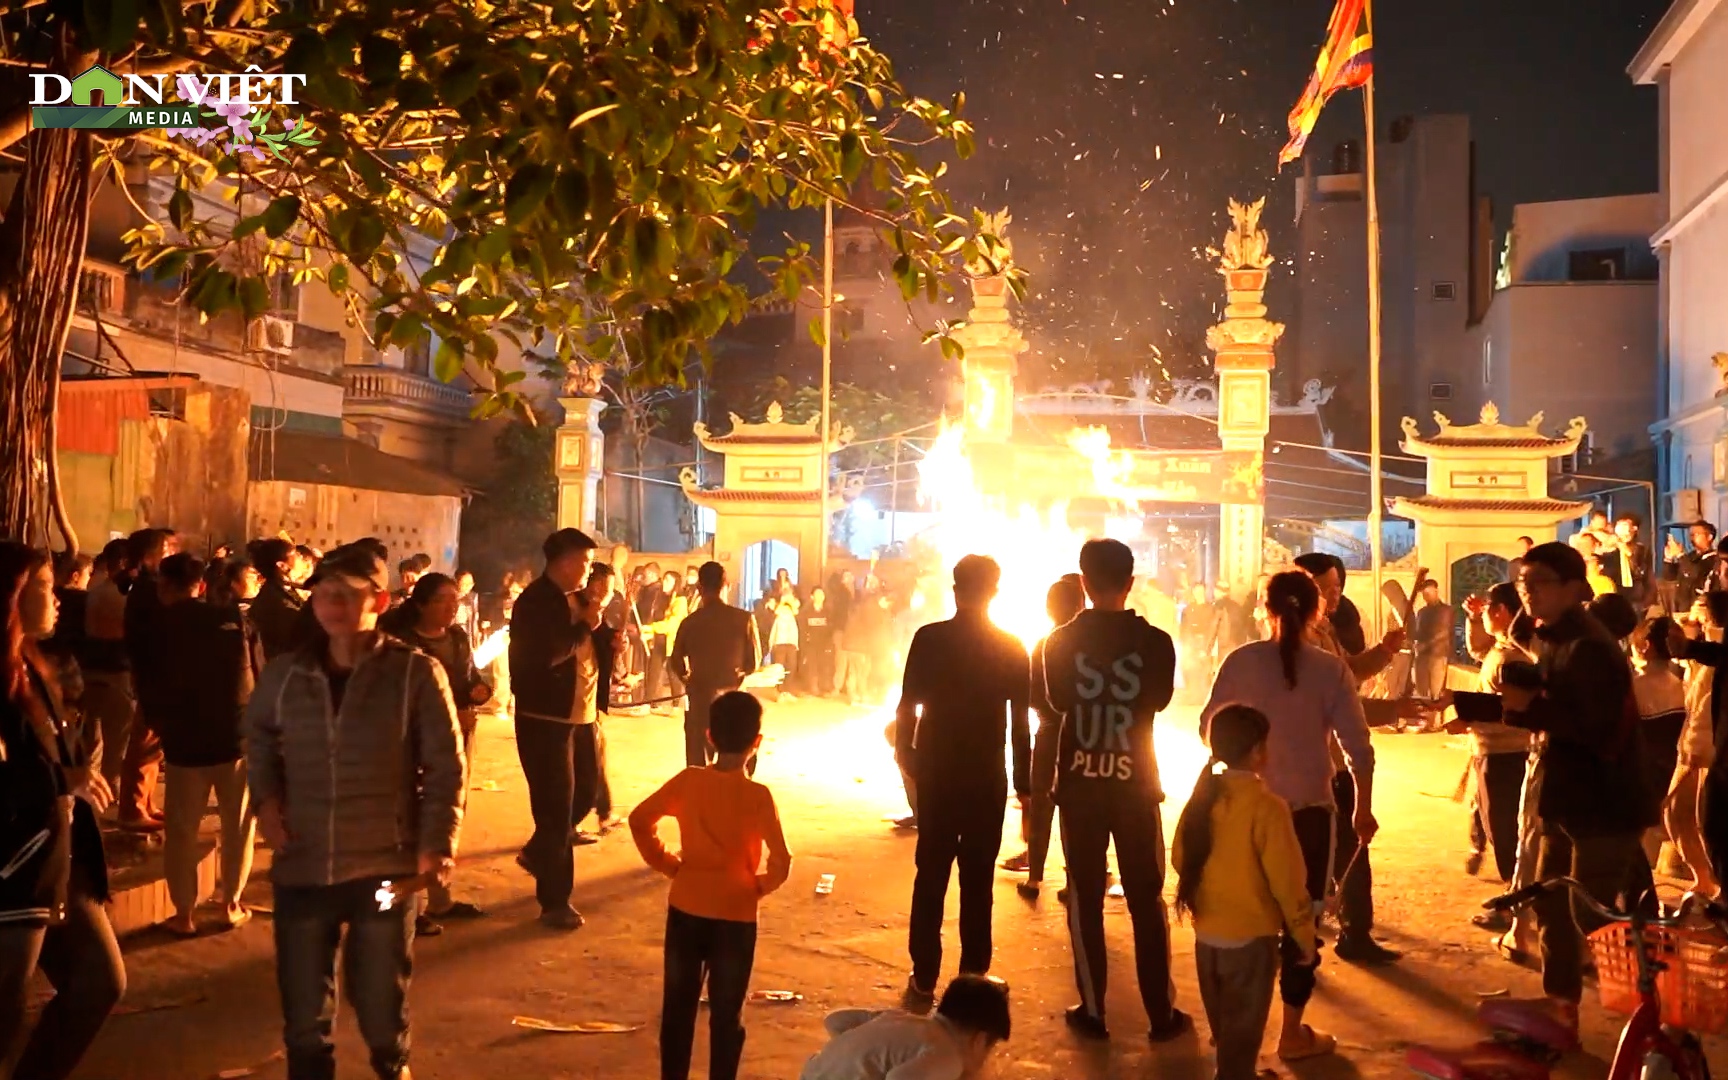 Hàng trăm người dân Hà Nội đổ xô đi lấy lửa cầu may đầu năm